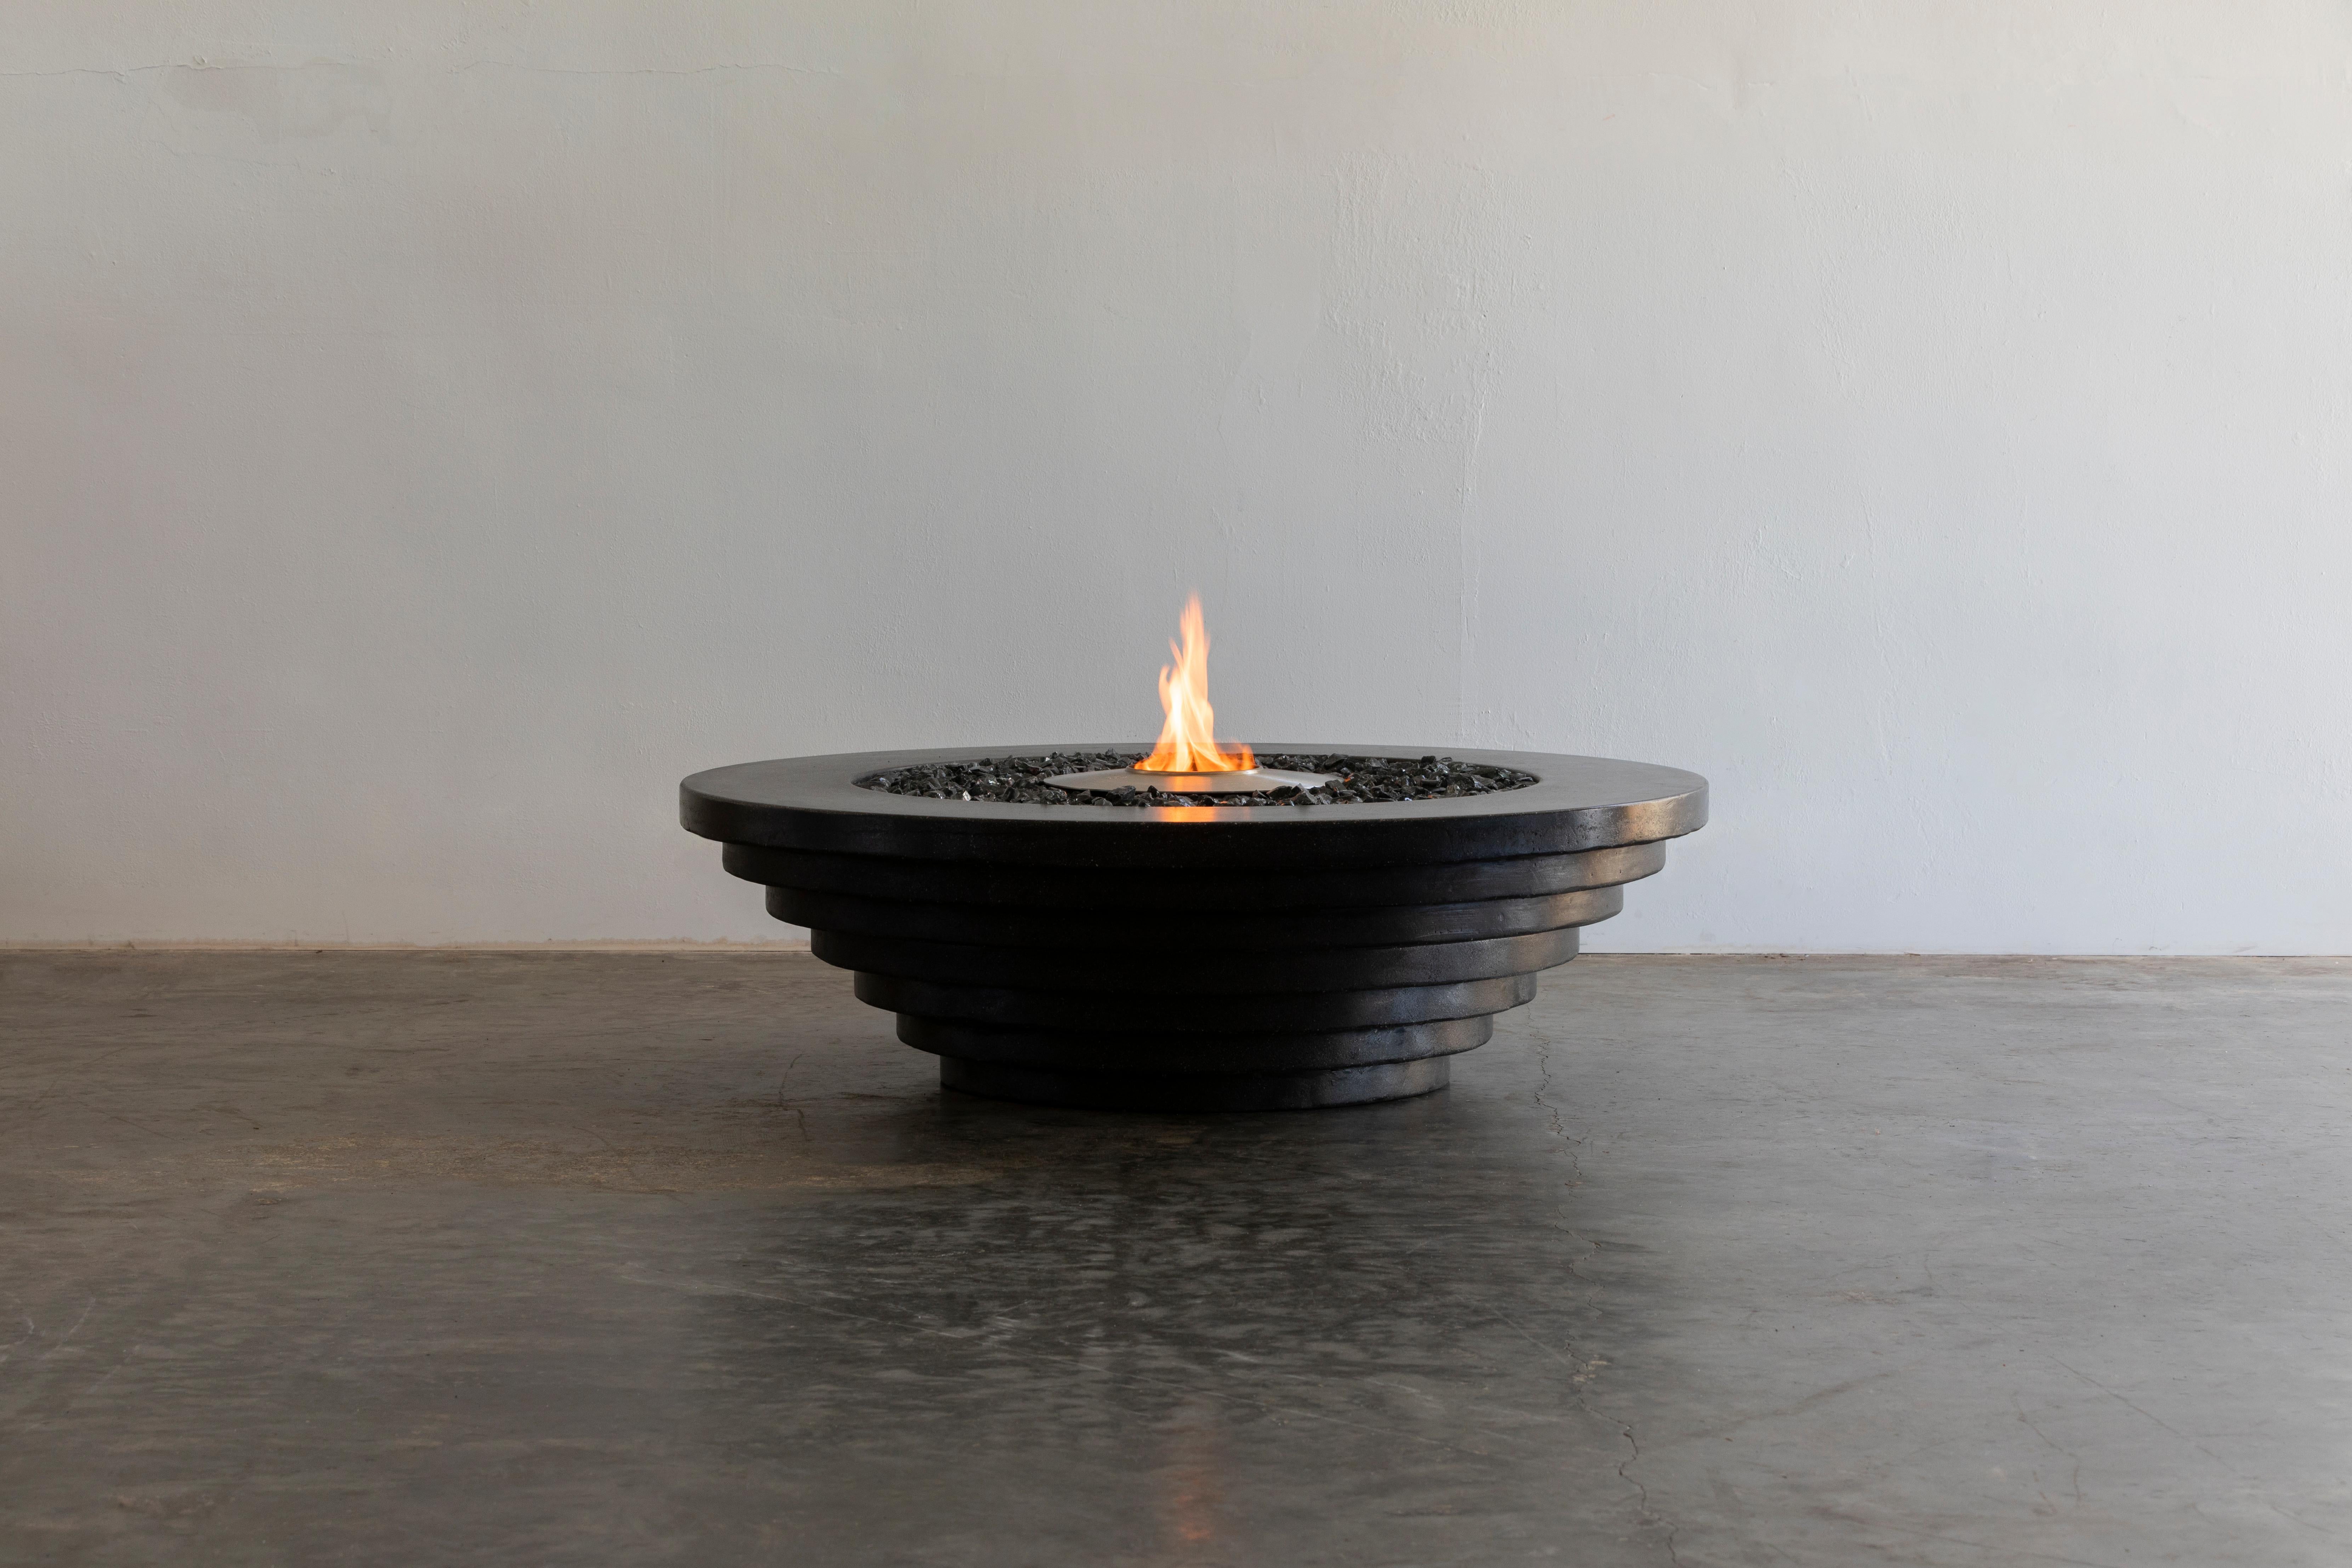 Der stufenförmige Feuertisch aus Beton von James de Wulf ist der dritte Entwurf einer Serie von drei verschiedenen Stilen. Beeinflusst durch die Geometrie von Scarpa, sitzt der Stepped Fire Table in abgestuften Kreisen mit einem oberen Durchmesser